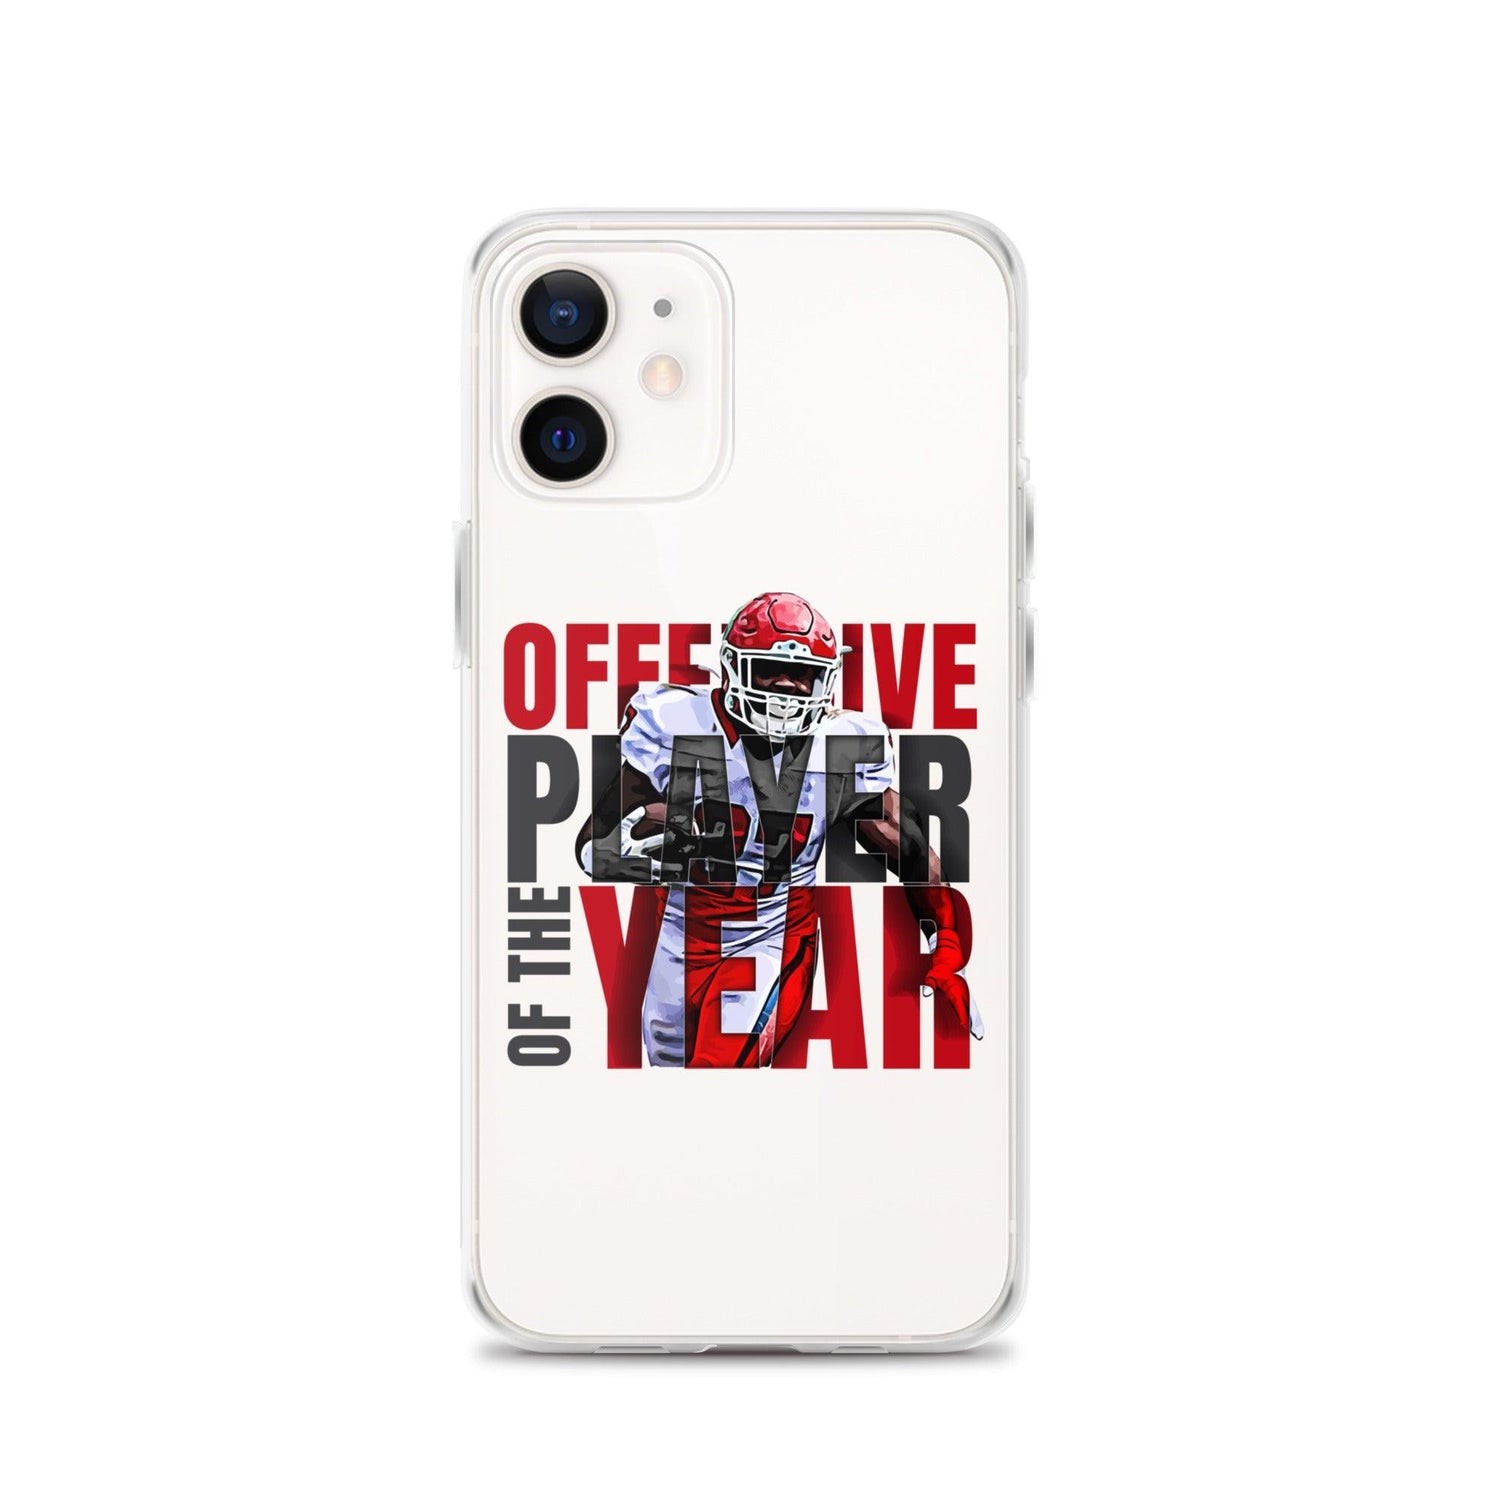 Darius Victor "OPOY" iPhone Case - Fan Arch